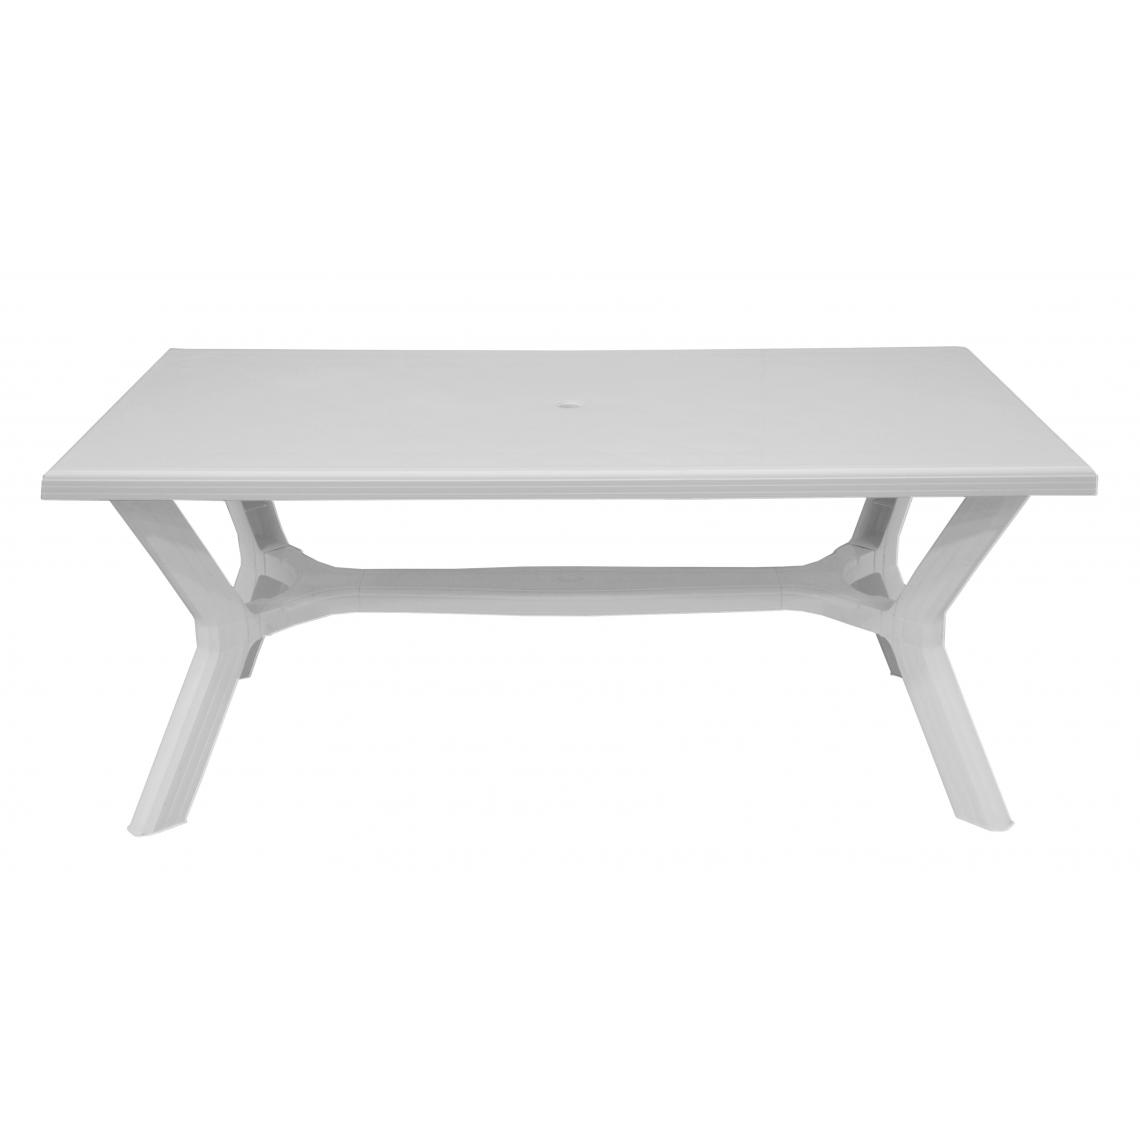 Alter - Table rectangulaire en plastique, couleur blanche, Dimensions 175 x 74 x 90 cm - Tables à manger